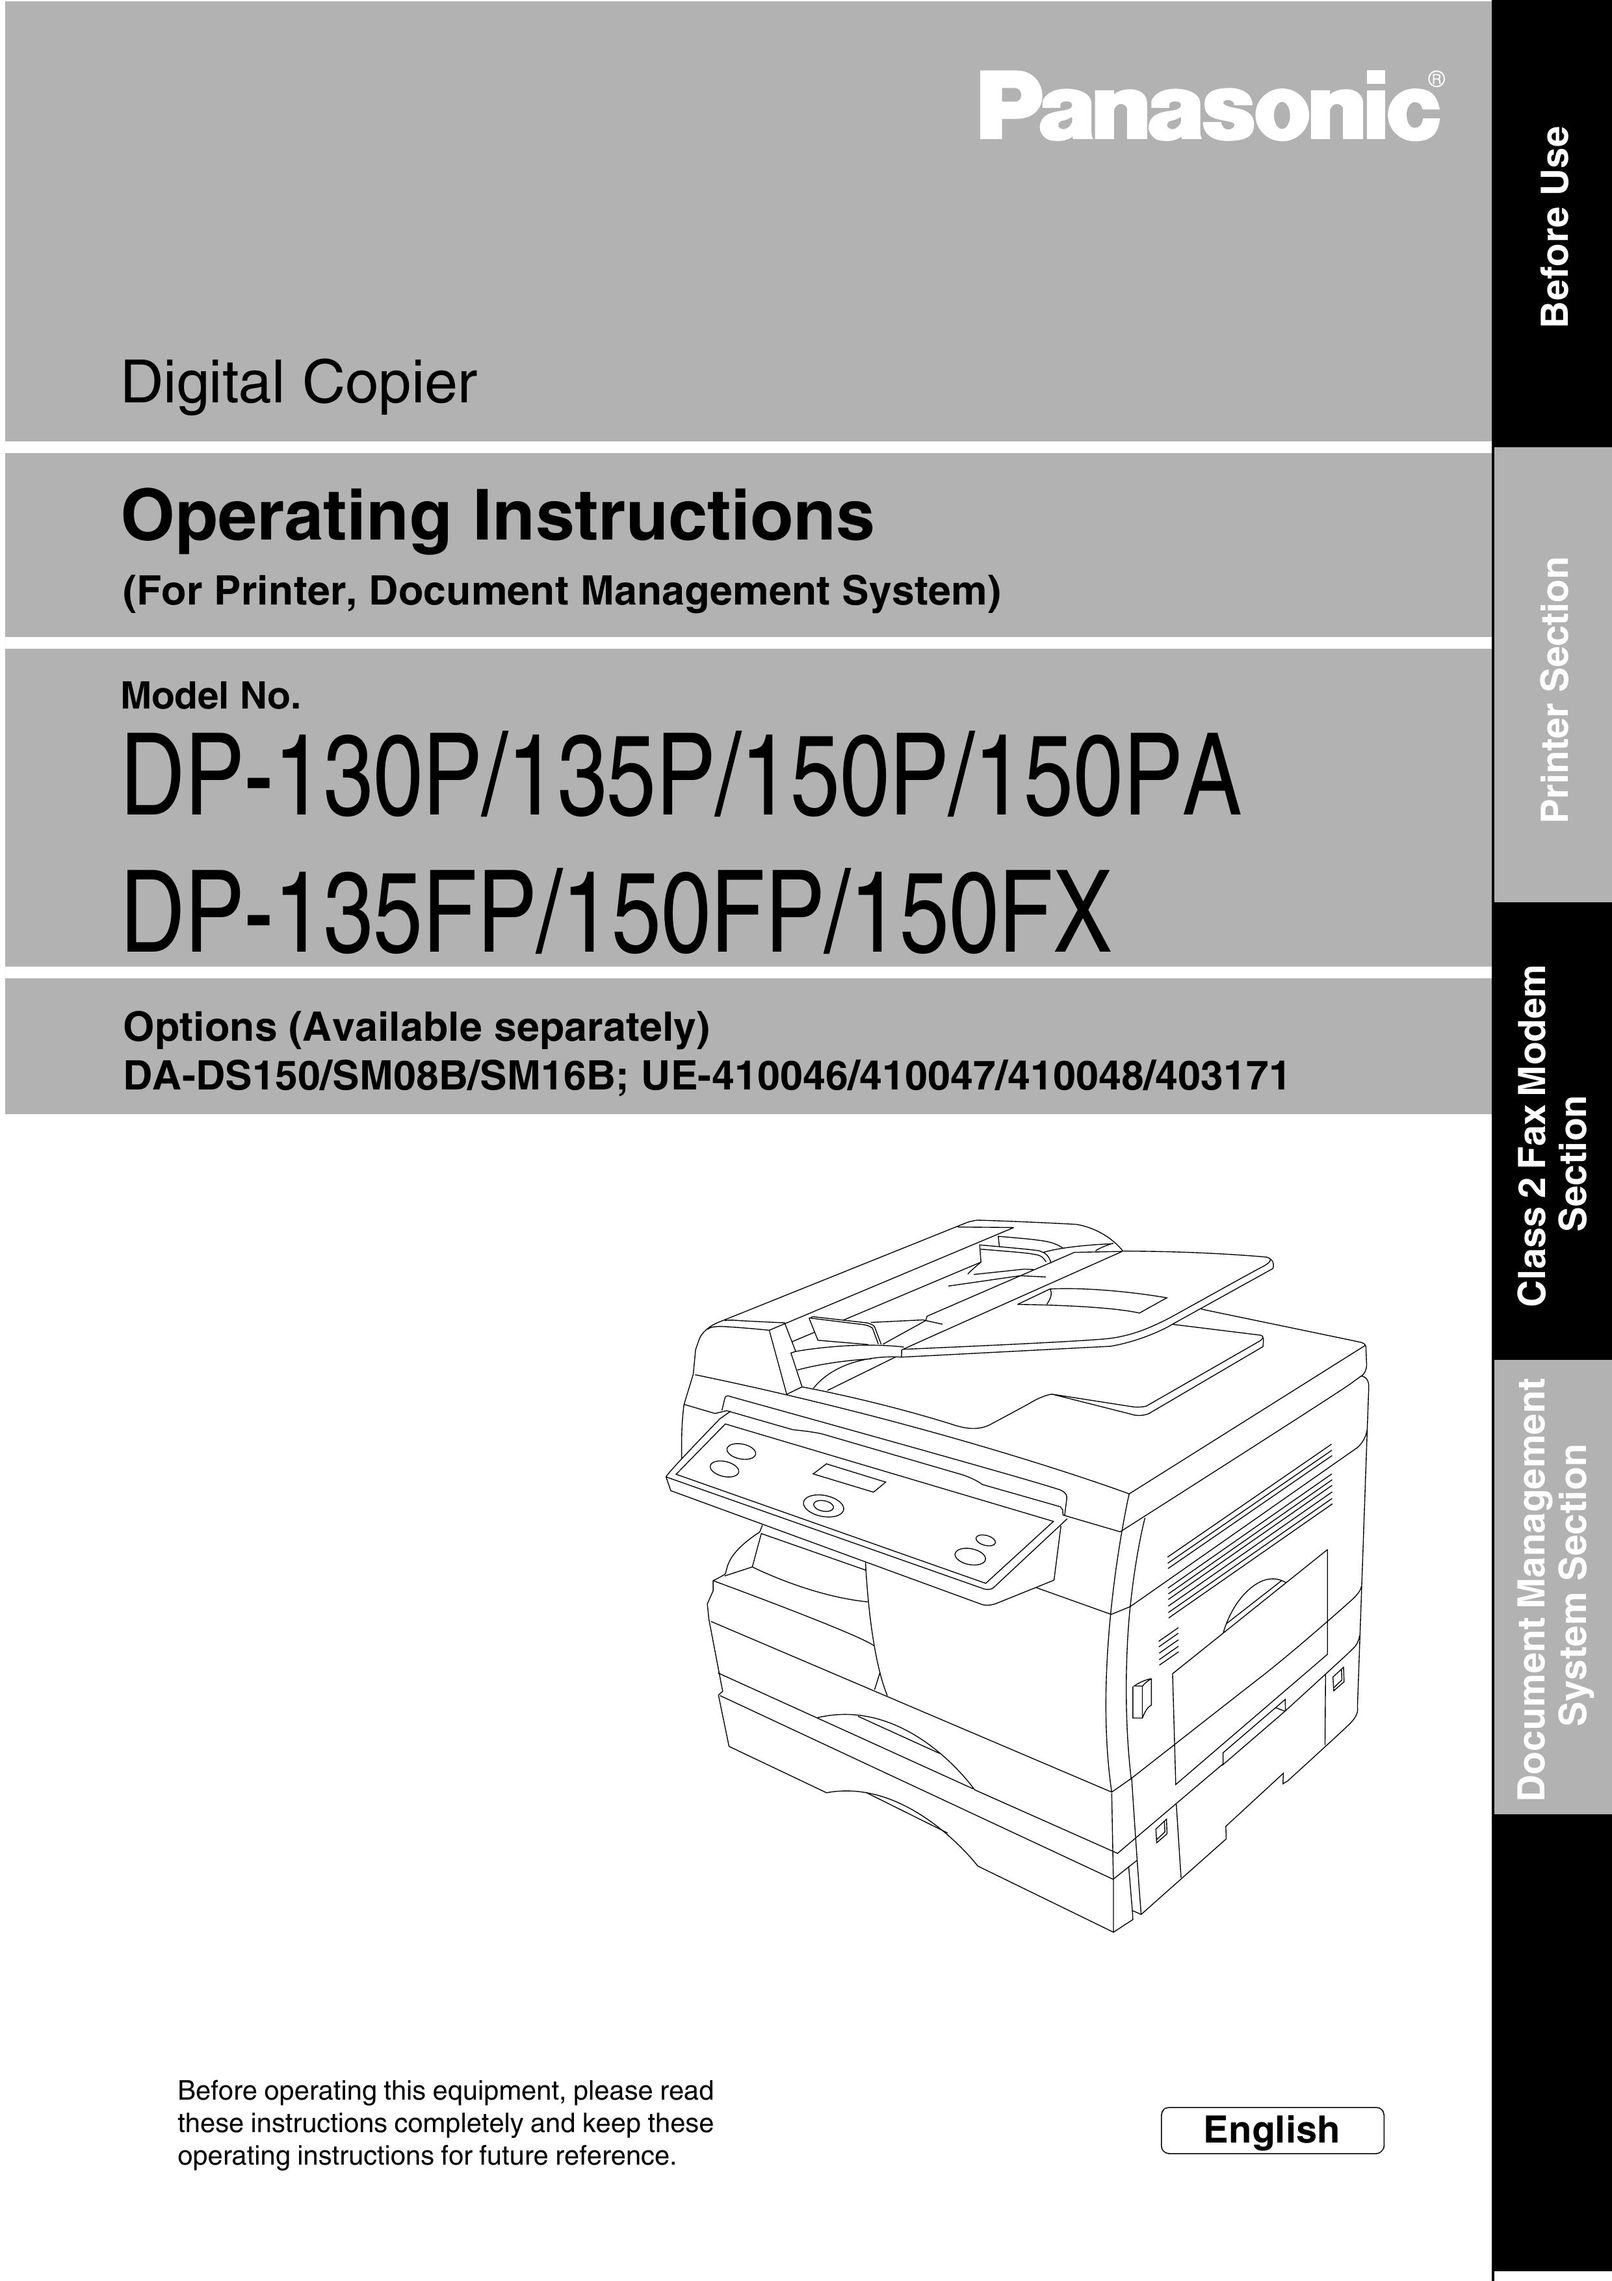 Panasonic DP-130P All in One Printer User Manual